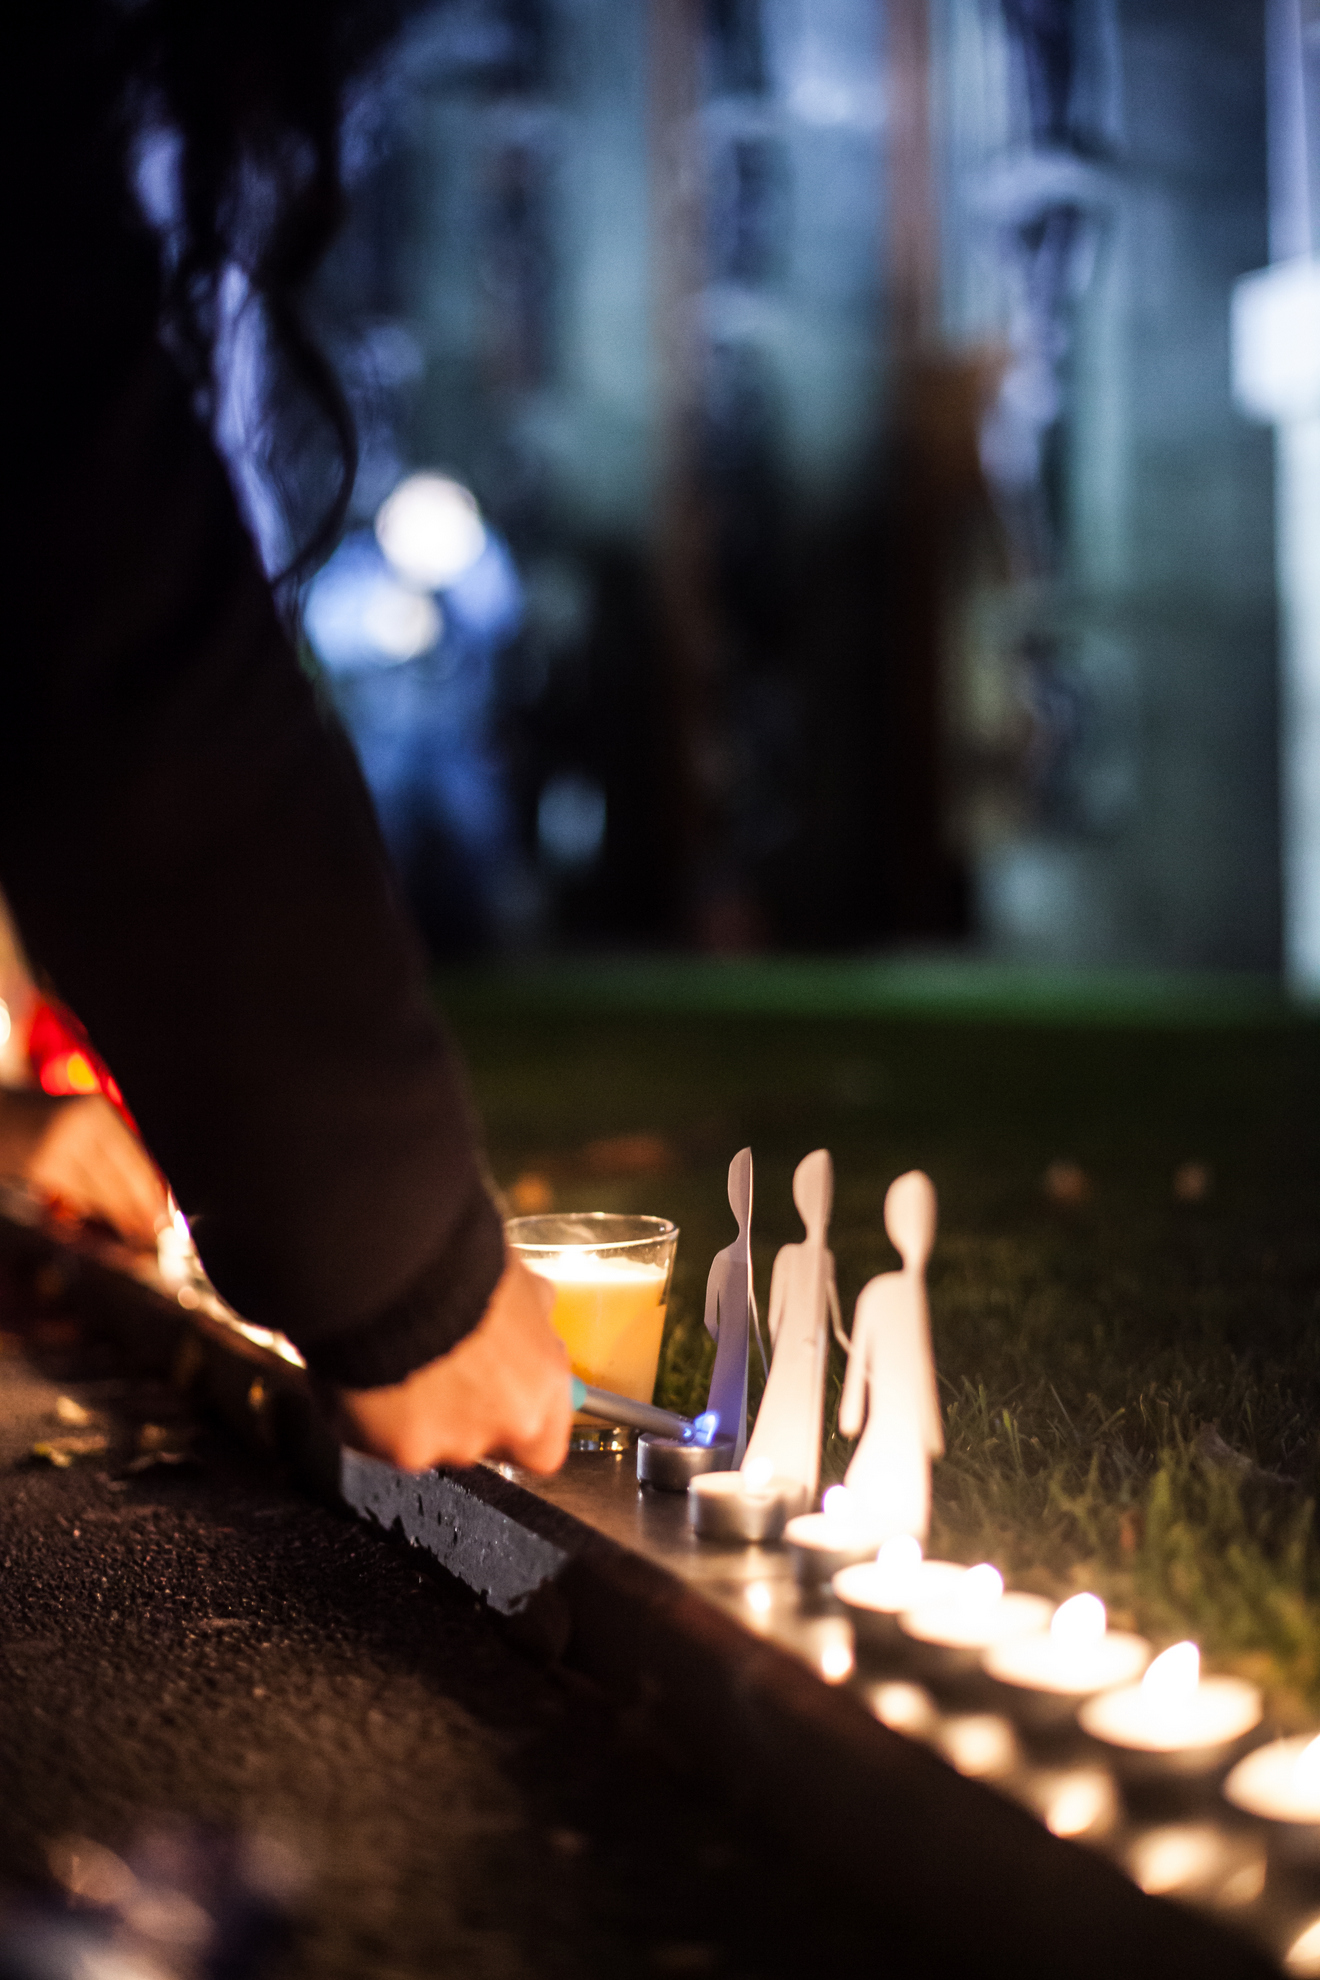 Ljubljana, 05.11.2015 Prižiganje 2600 sveč pred Državim zborom v spomin 2600 preminulih beguncev na poti v evropo.